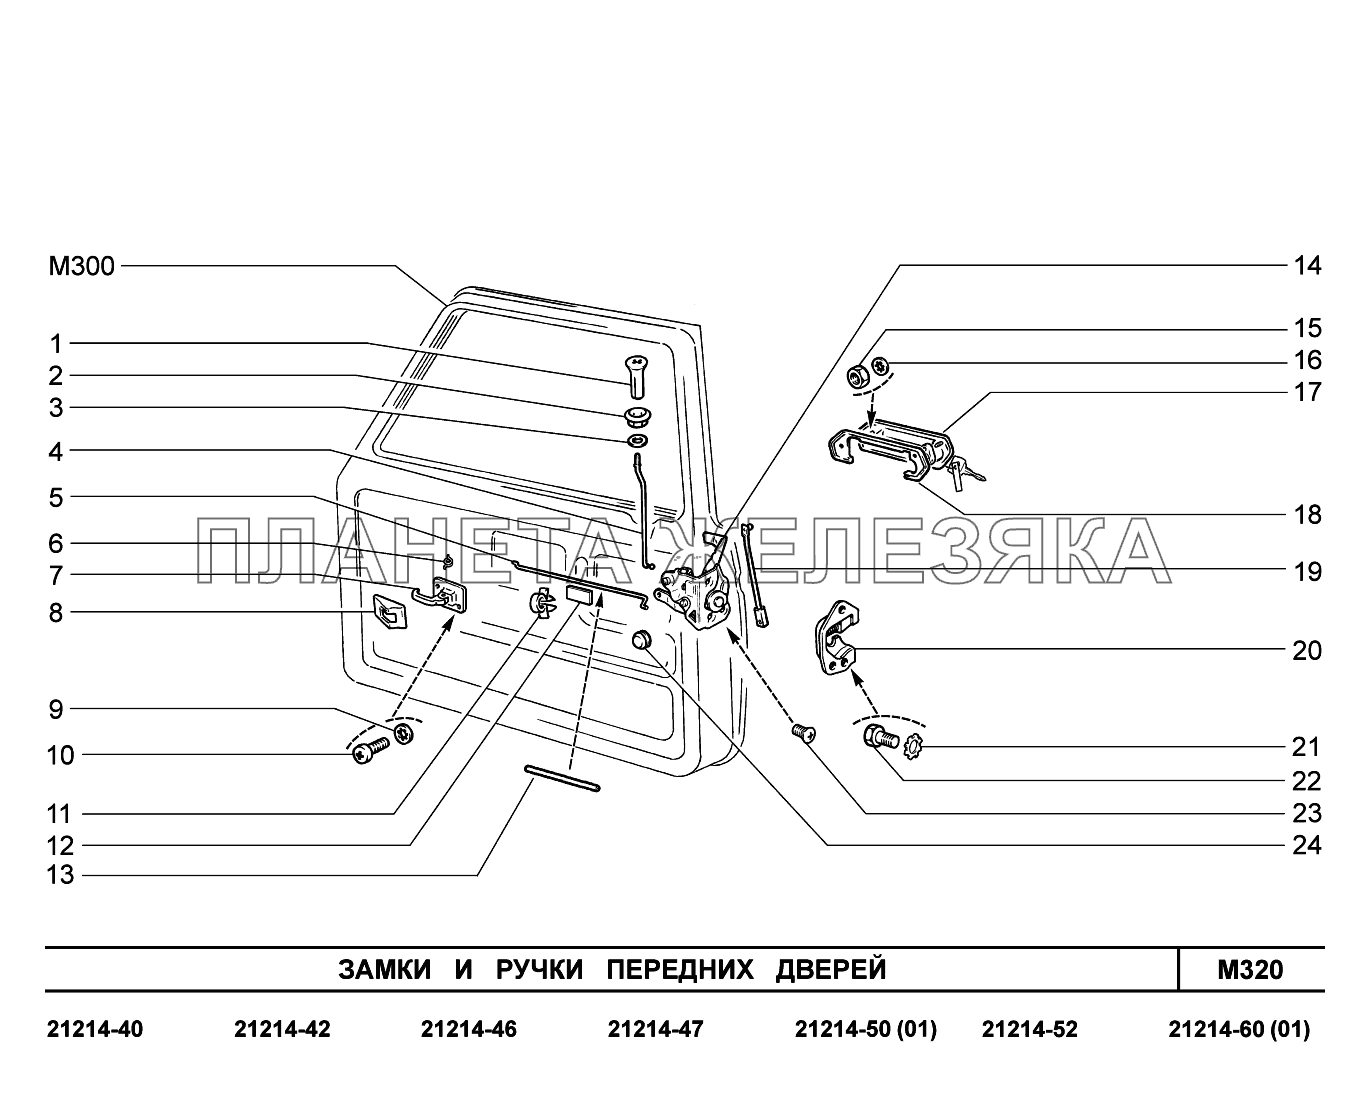 M320. Замки и ручки передних дверей Lada 4x4 Urban